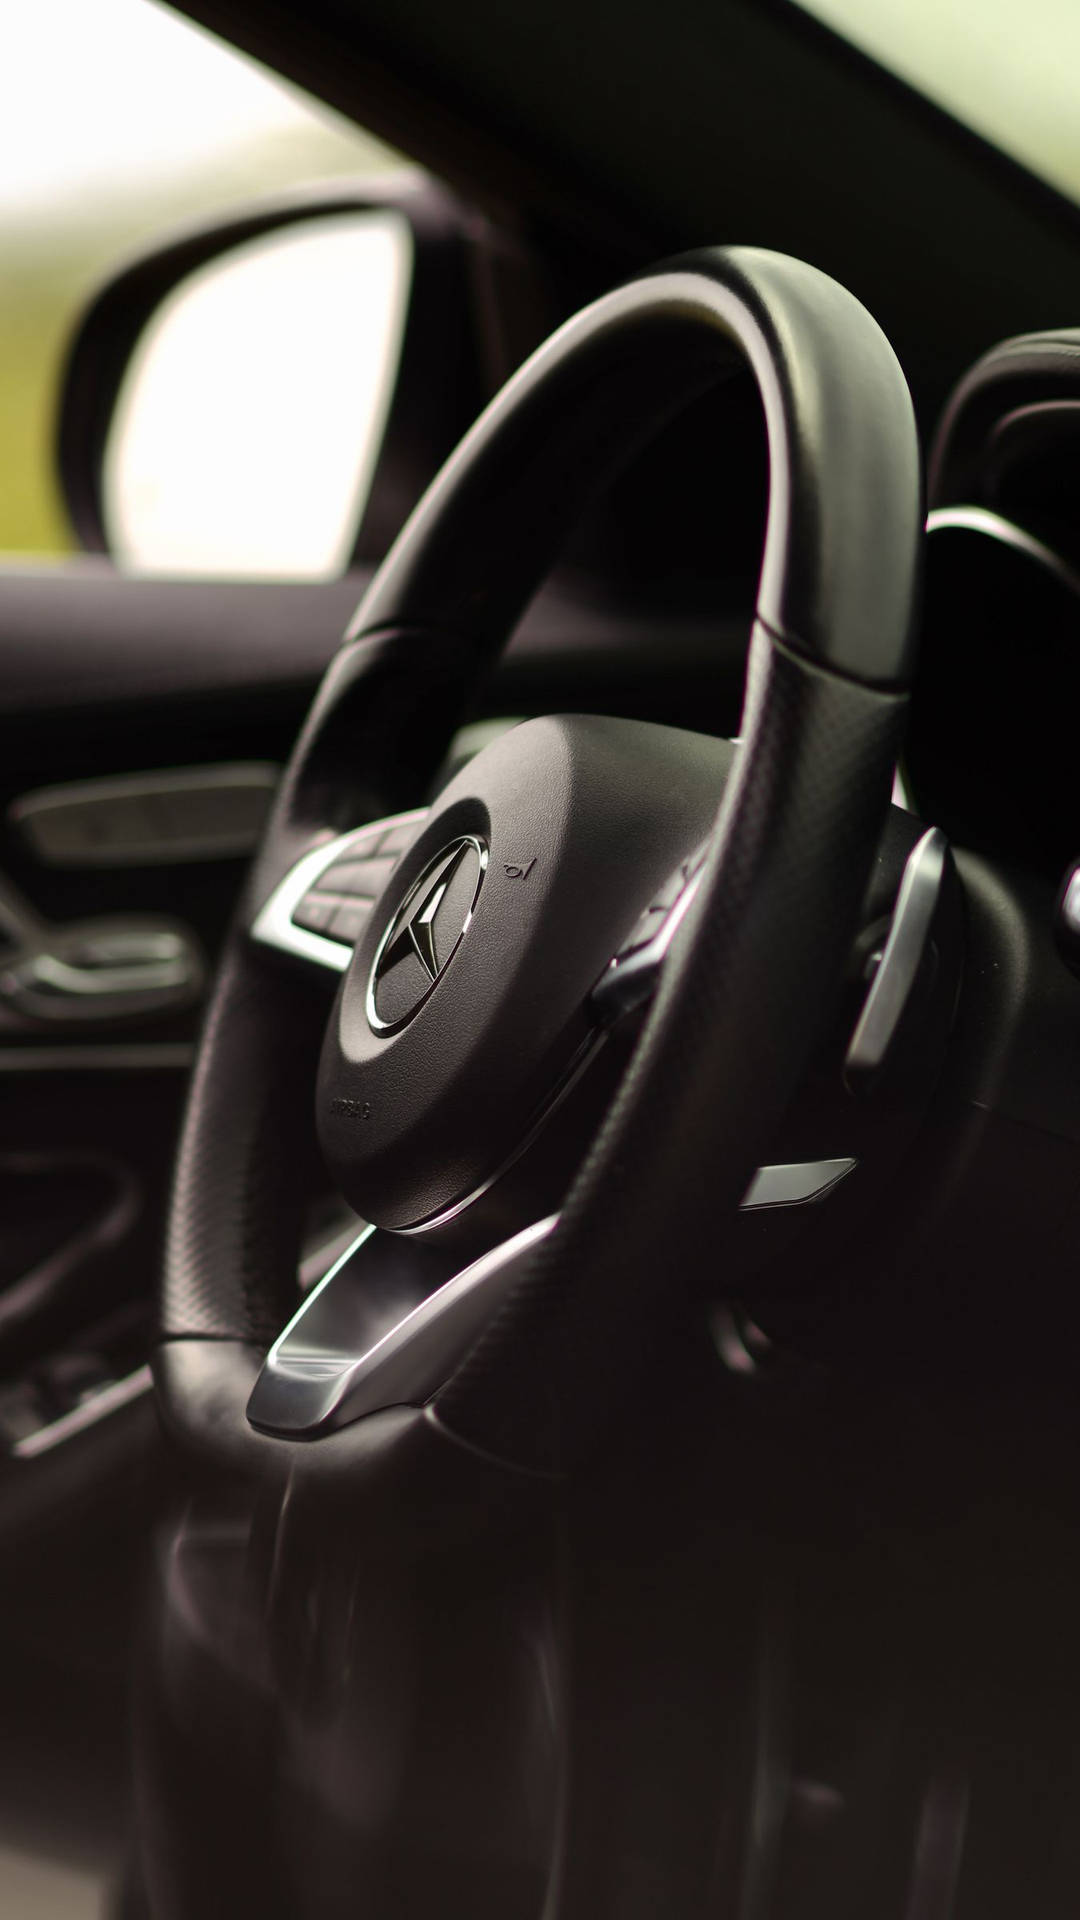 Mercedes Benz C300 Steering Wheel